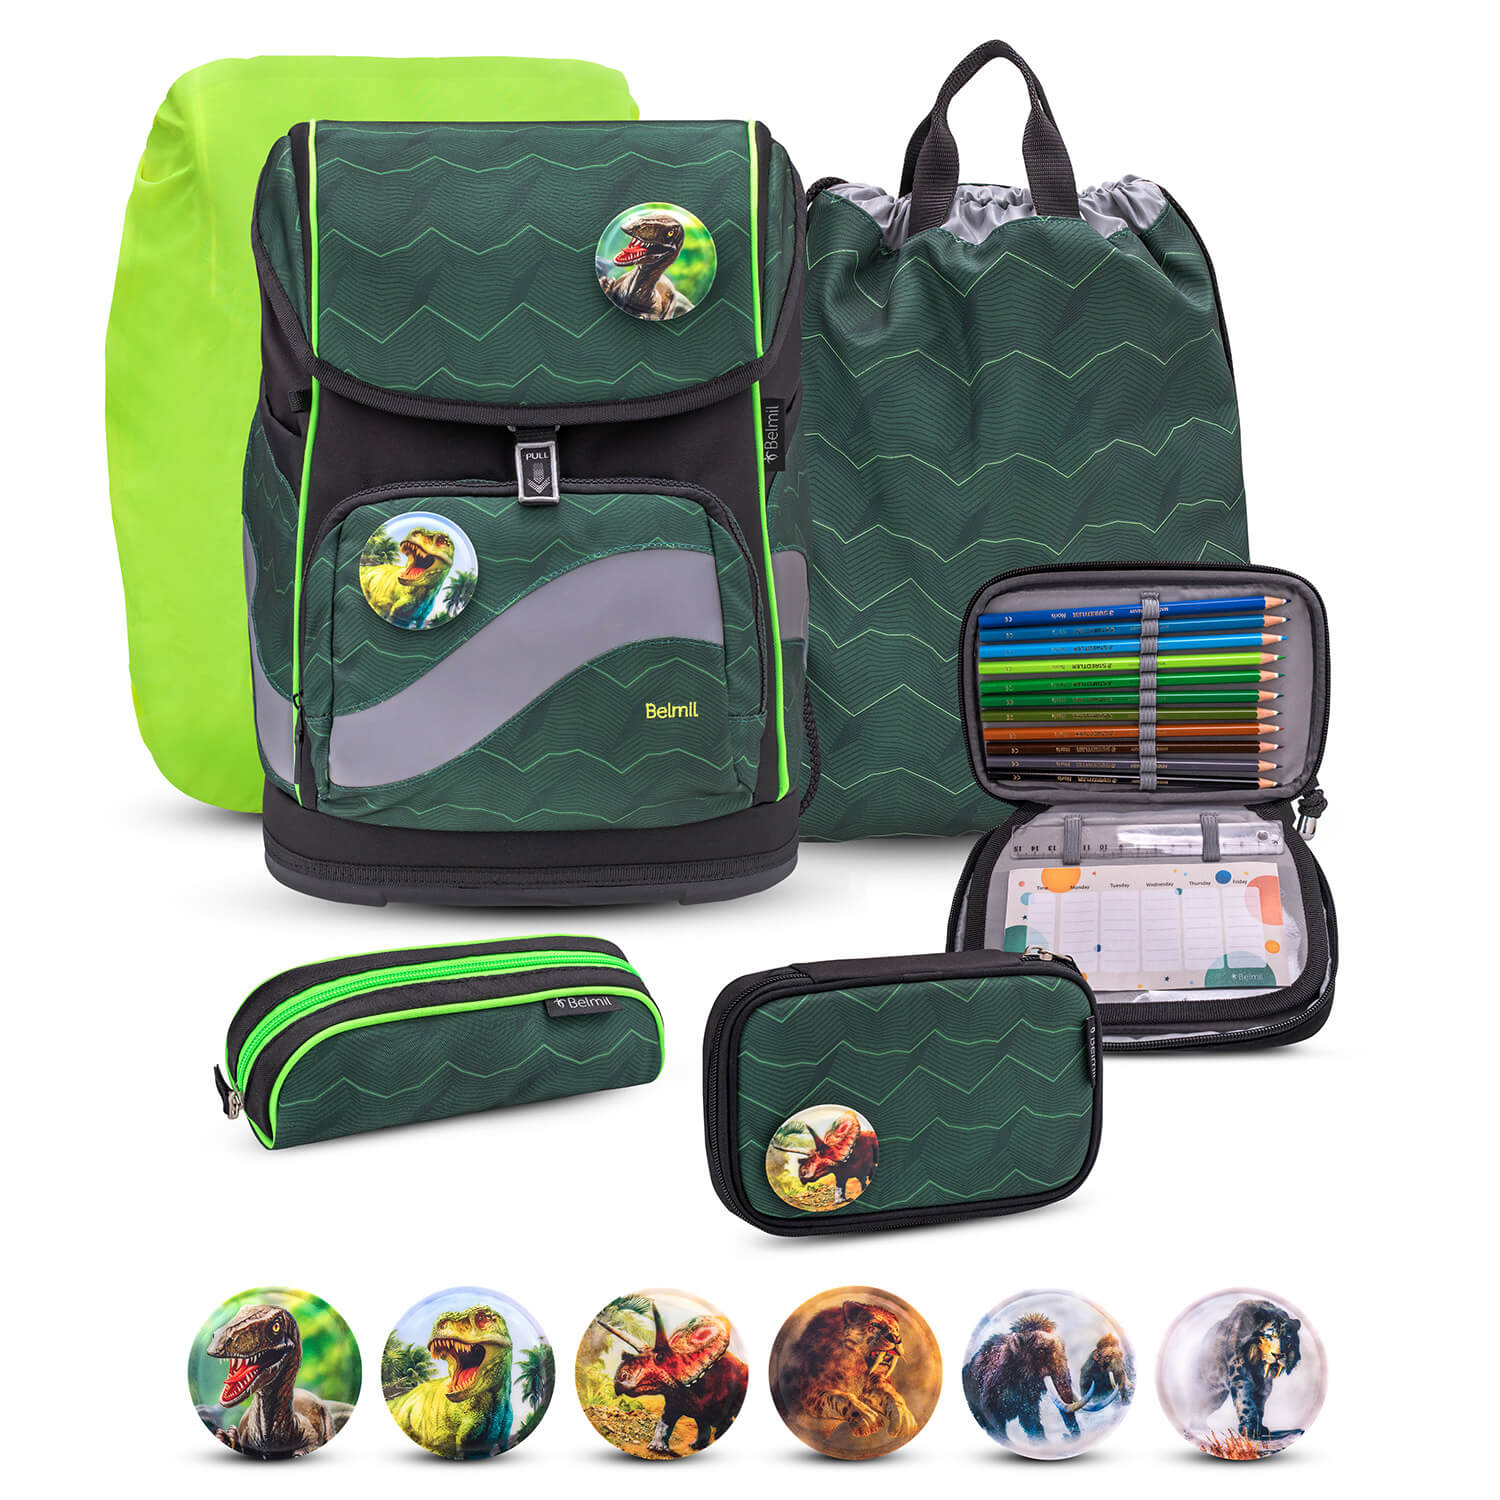 Smarty Plus Twist of Lime Schoolbag set 6pcs.